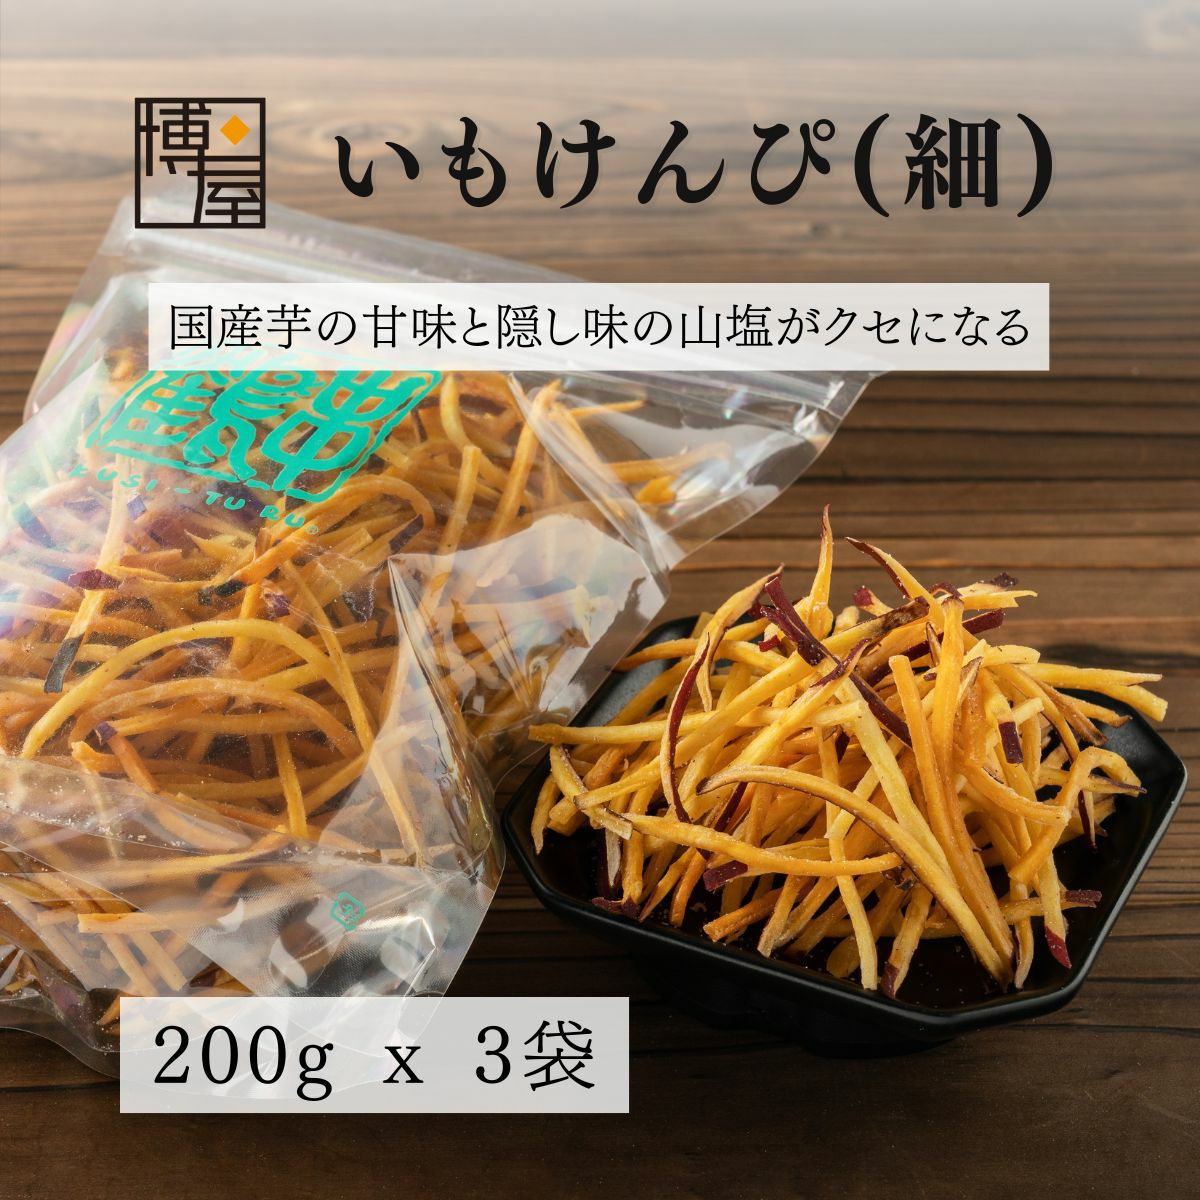 いもけんぴ (細)  会津 串鶴 芋けんぴ いもけんぴチップス 200g x 3袋 TOP